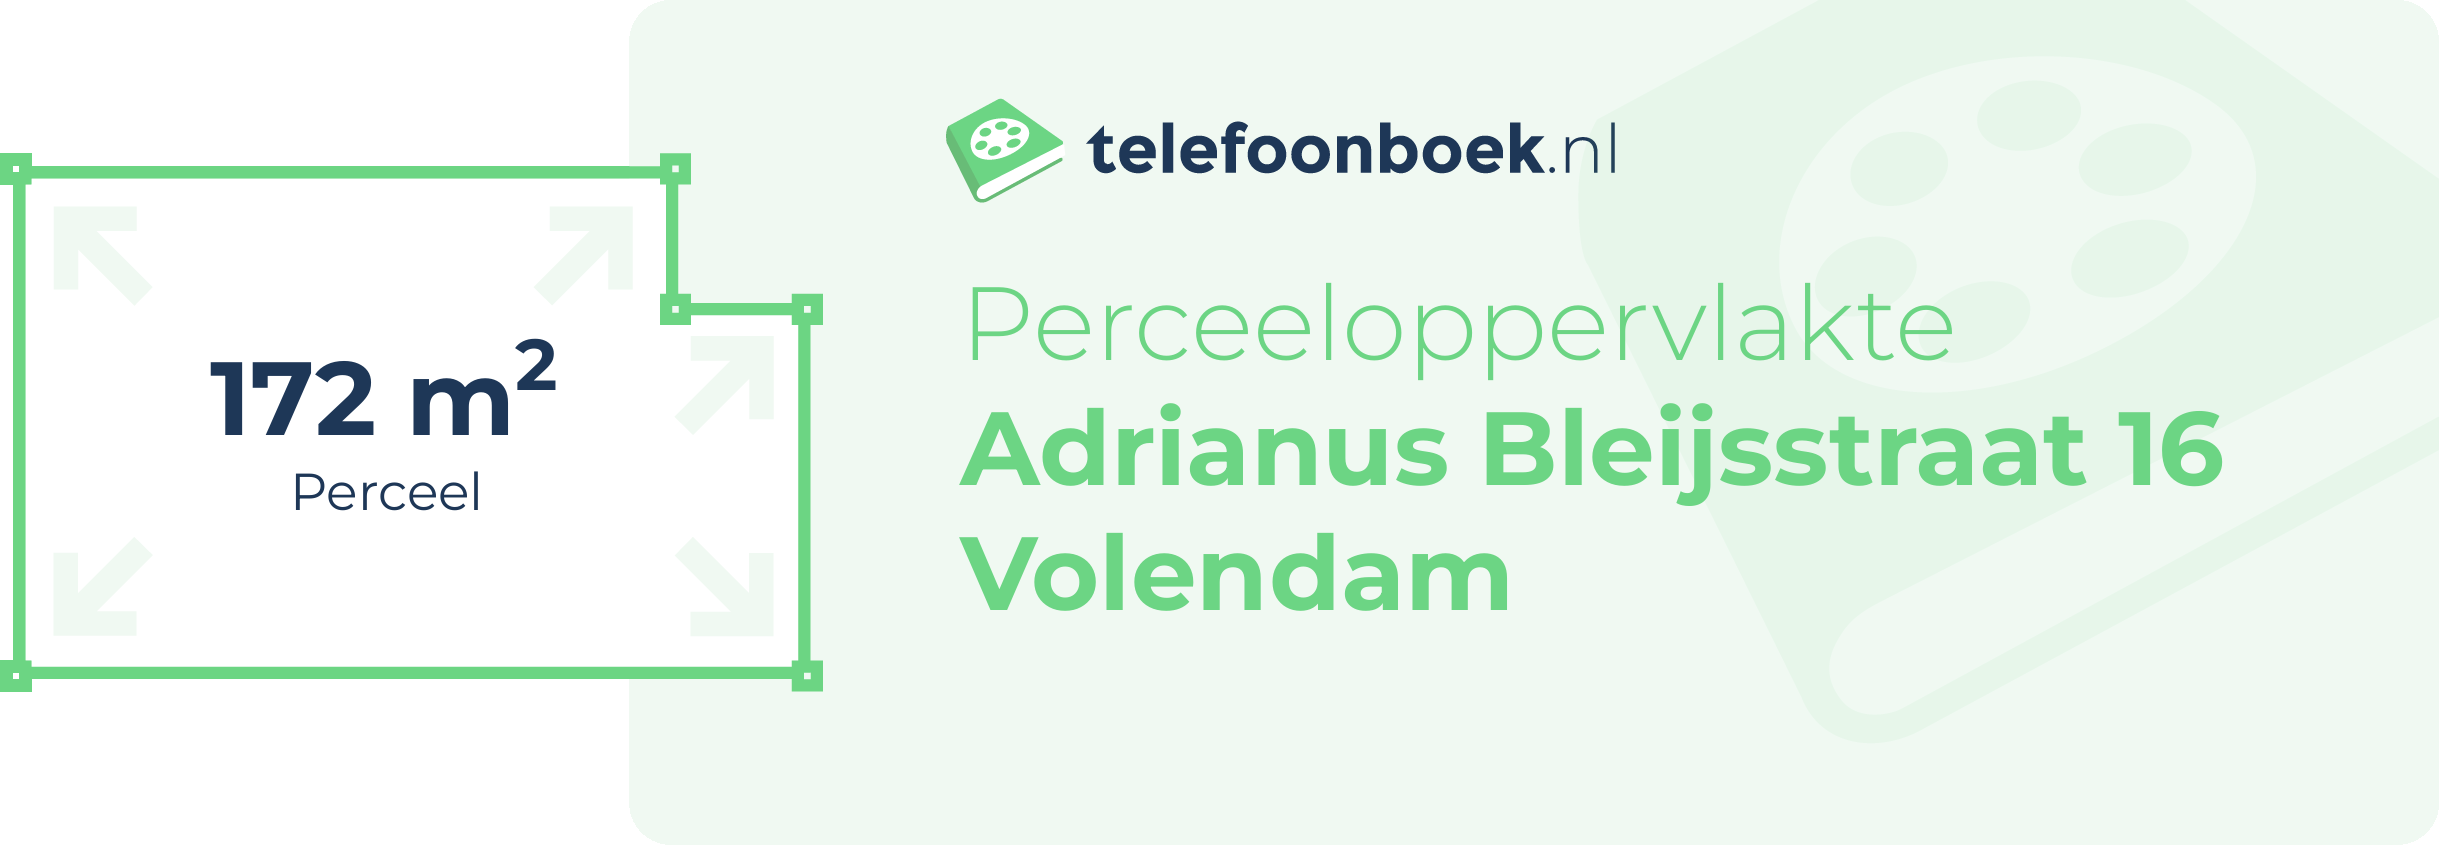 Perceeloppervlakte Adrianus Bleijsstraat 16 Volendam